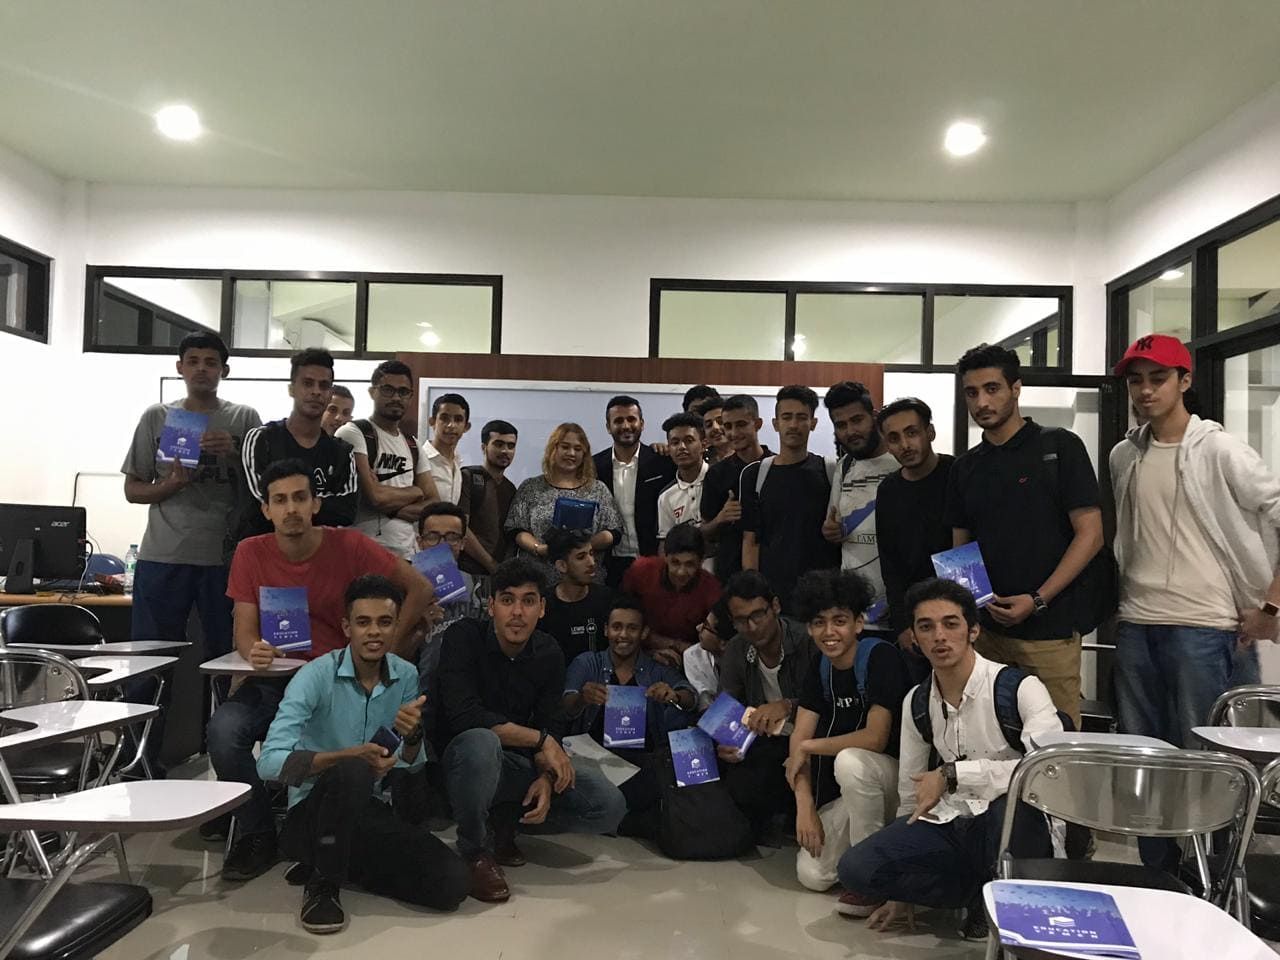 إديوكيشن يمن تقيم محاضرة للطلاب الدوليين بجامعة ناروتاما الإندونيسية